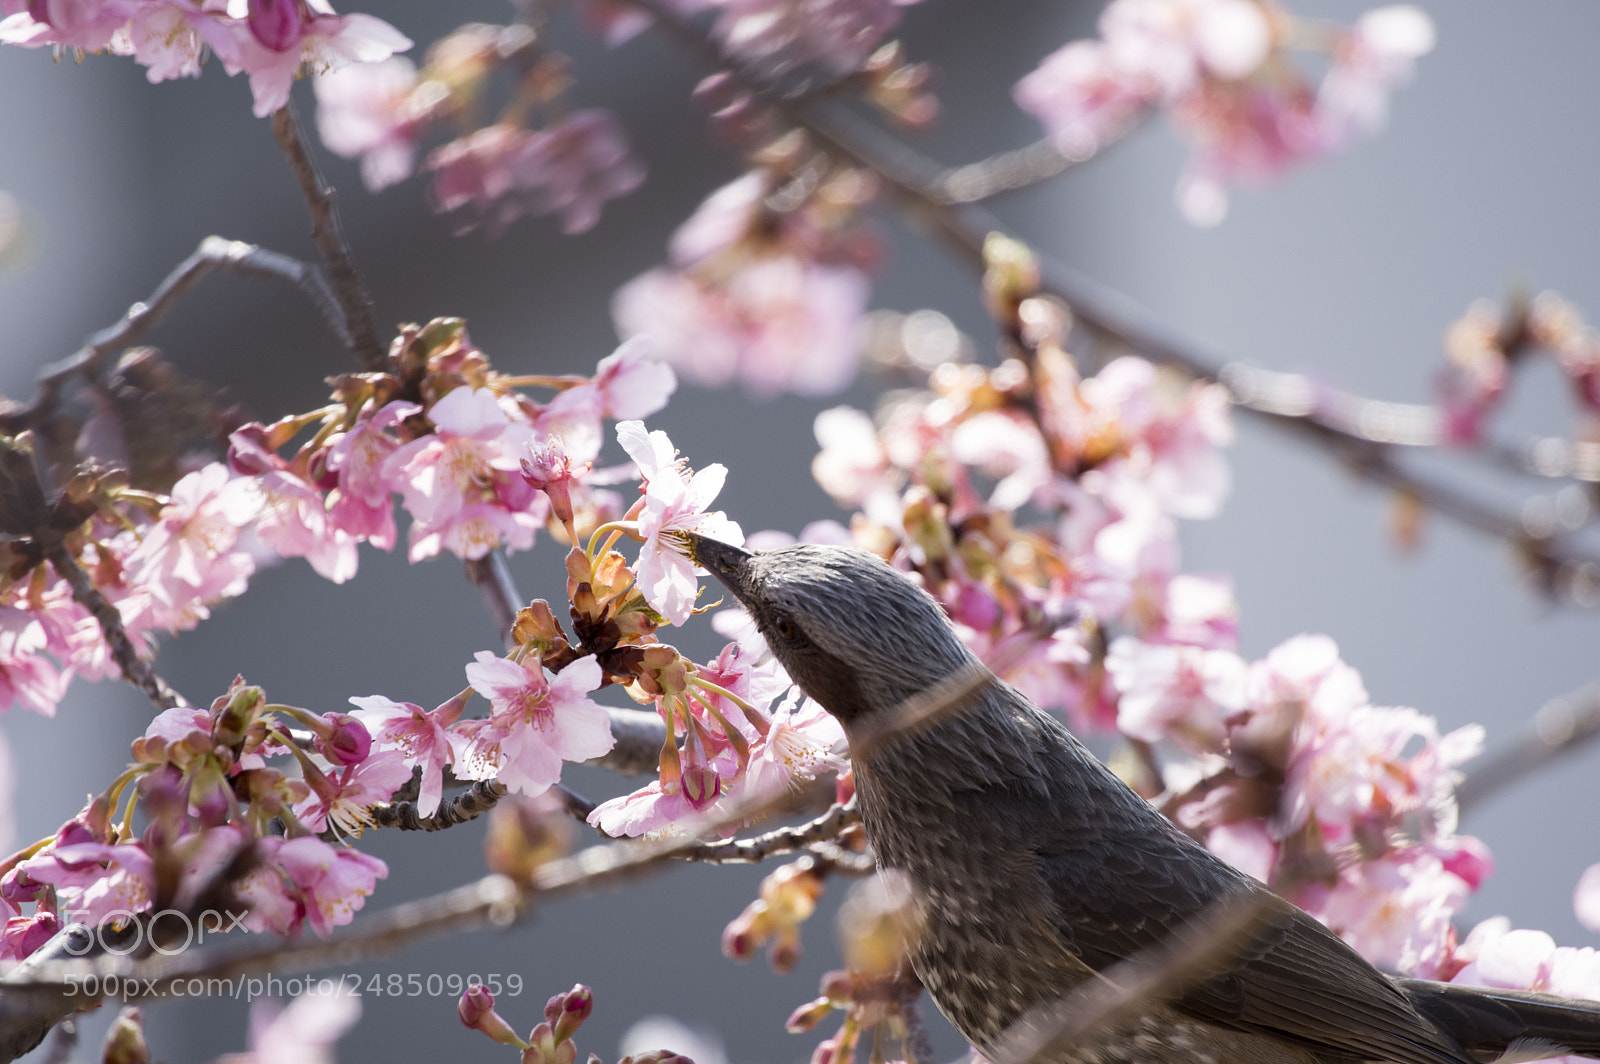 Pentax KP sample photo. Sakura with bird photography